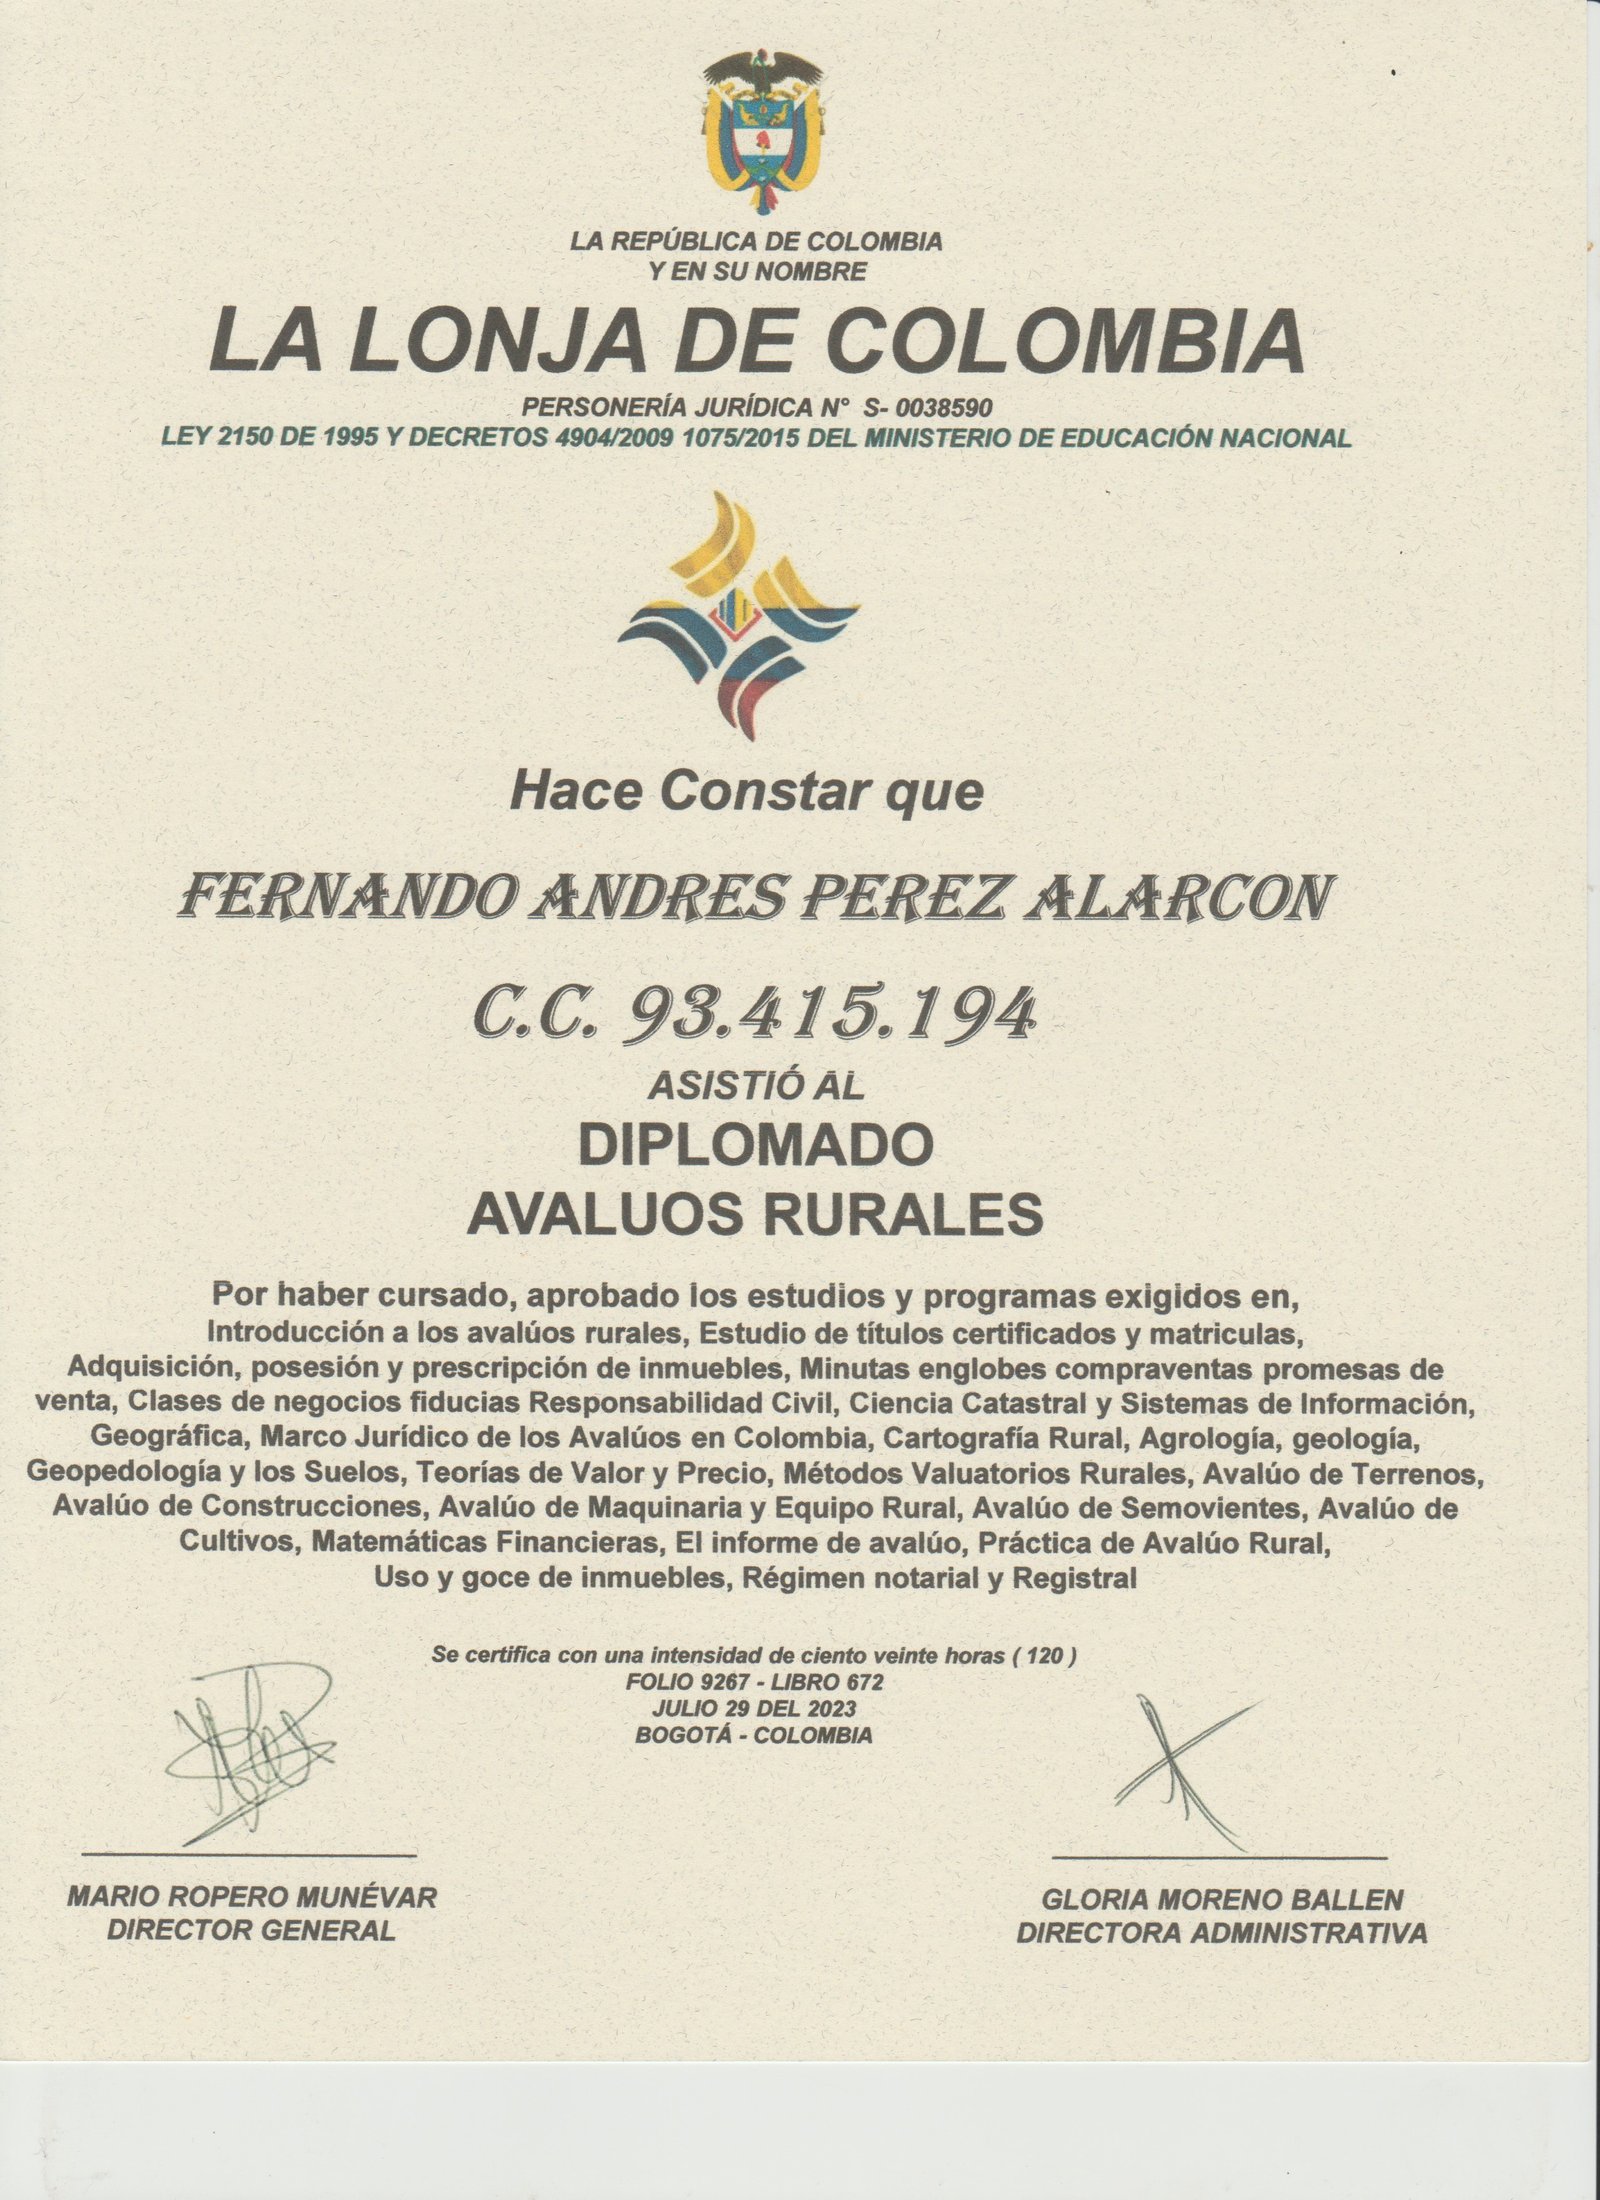 Diplomado en Avalúos Rurales - Fernando Andrés Pérez Alarcón - Consulta Mis Inmuebles S.A.S. | Tu nuevo comienzo empieza hoy!